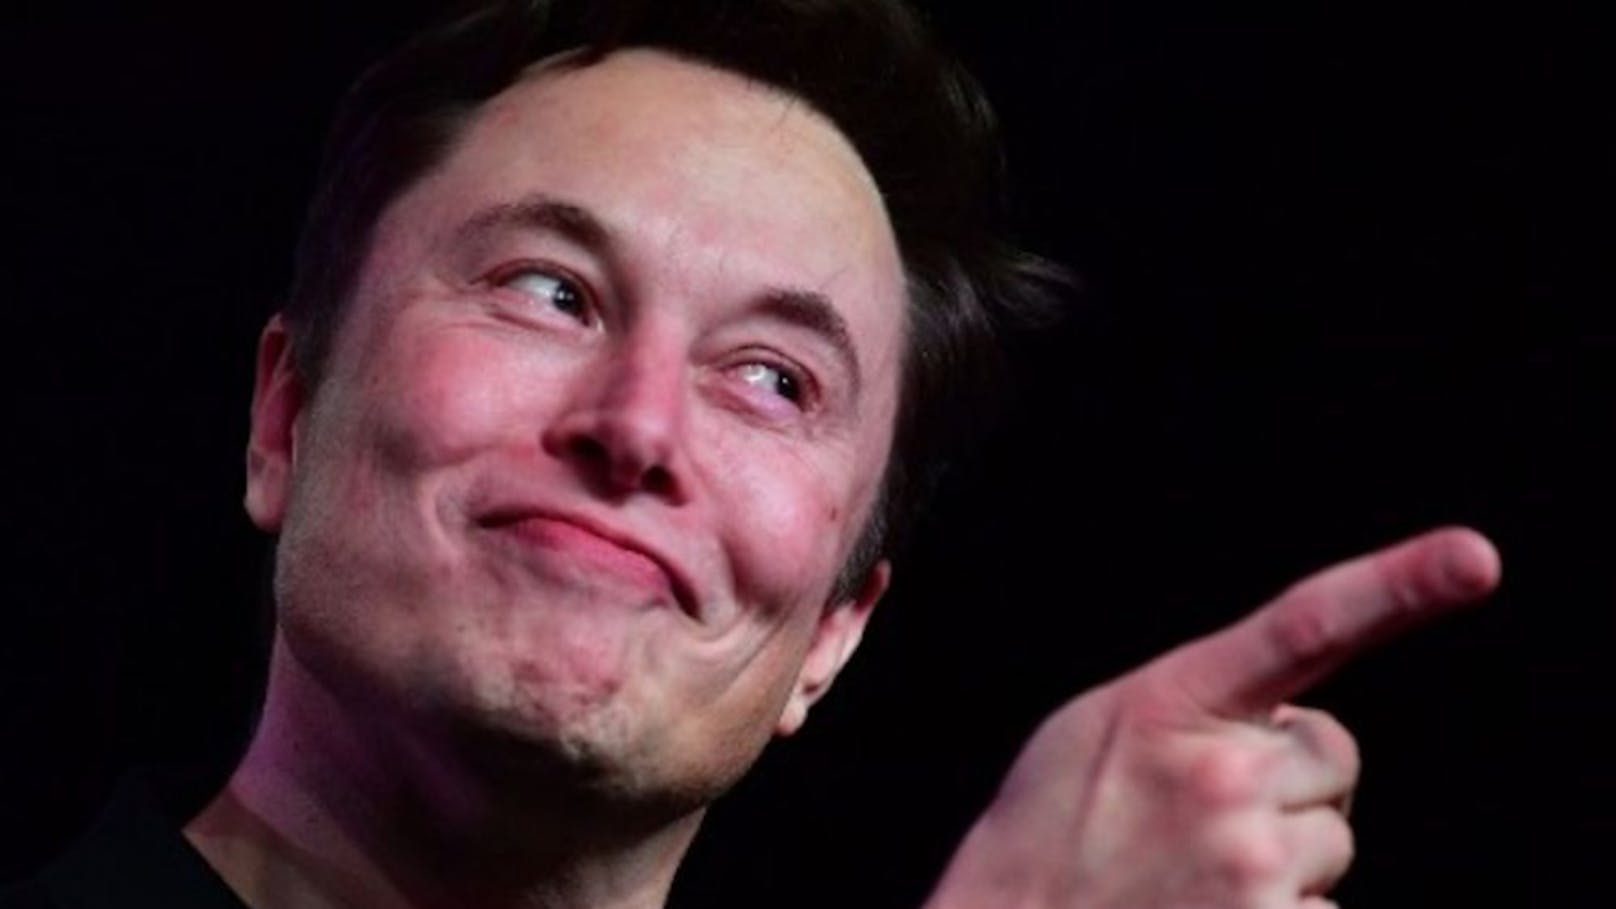 Tesla hingegen halte seine Führungsposition Jahr um Jahr mit neuen technischen Fortschritten. (Im Bild: Tesla-CEO Elon Musk)